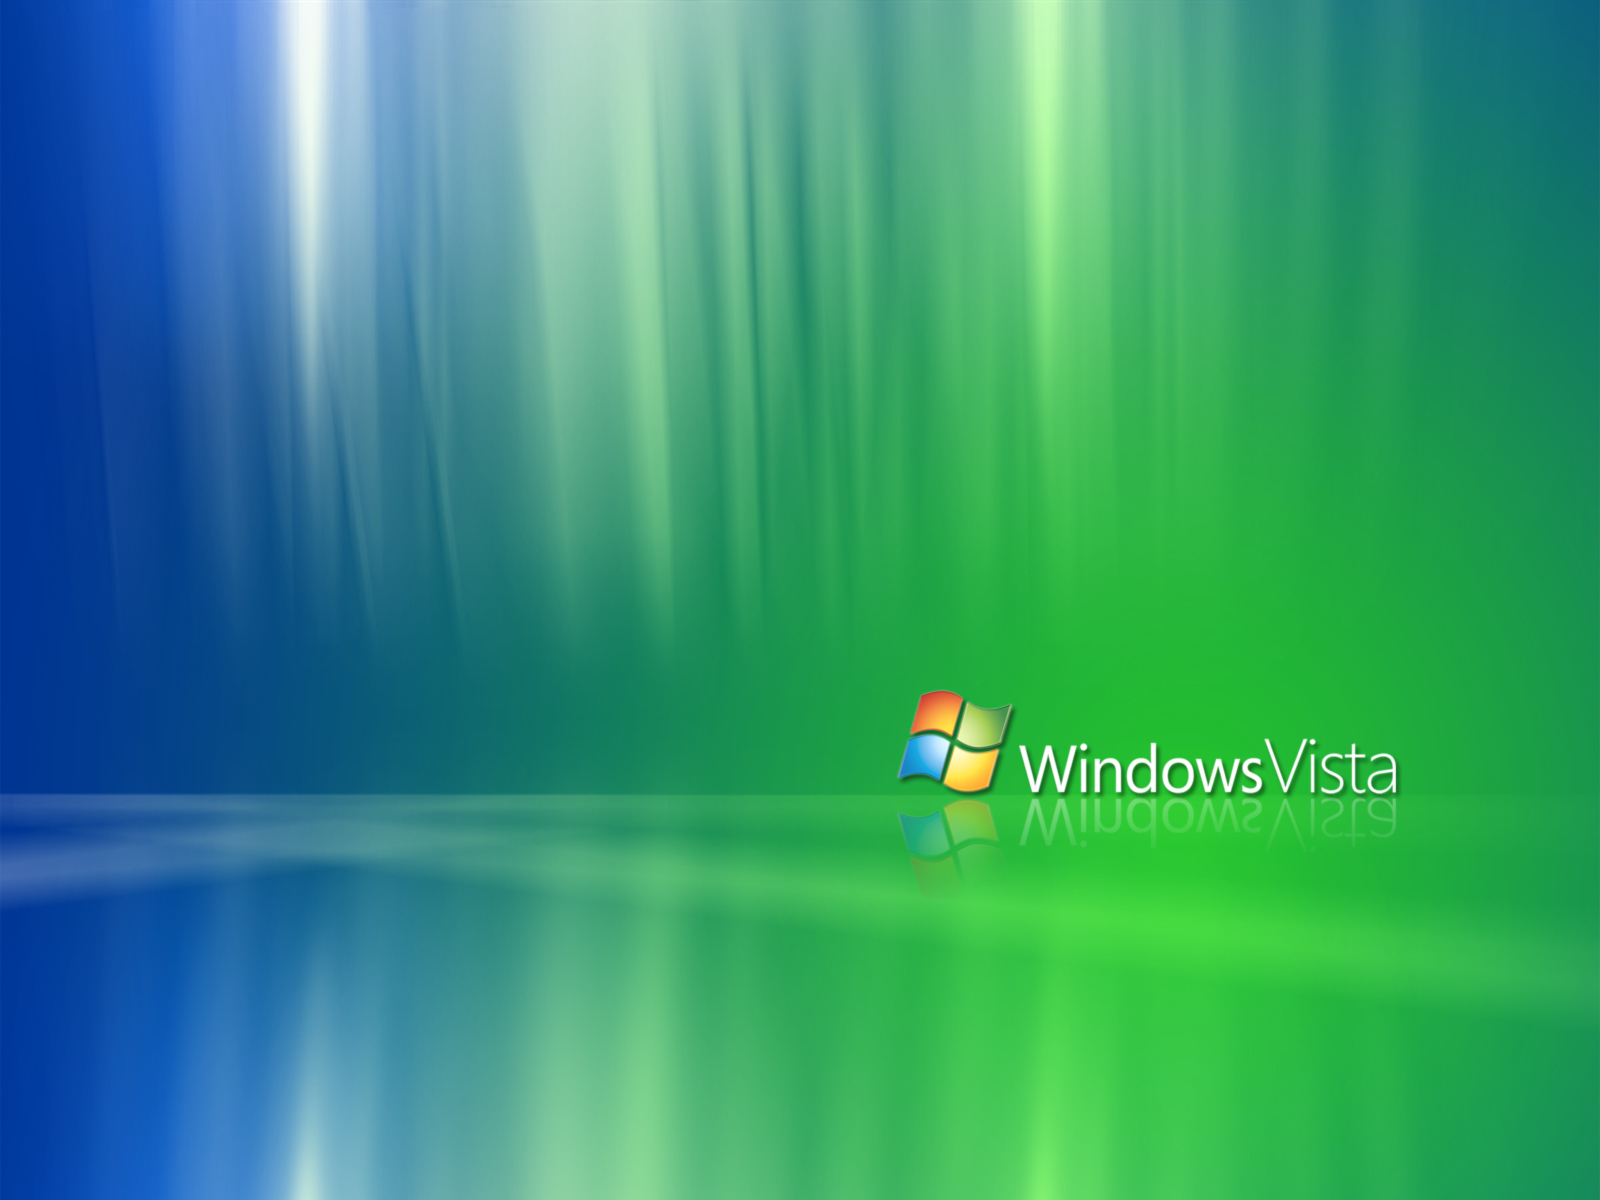 fond d'écran windows vista,vert,bleu,système opérateur,animation,ciel